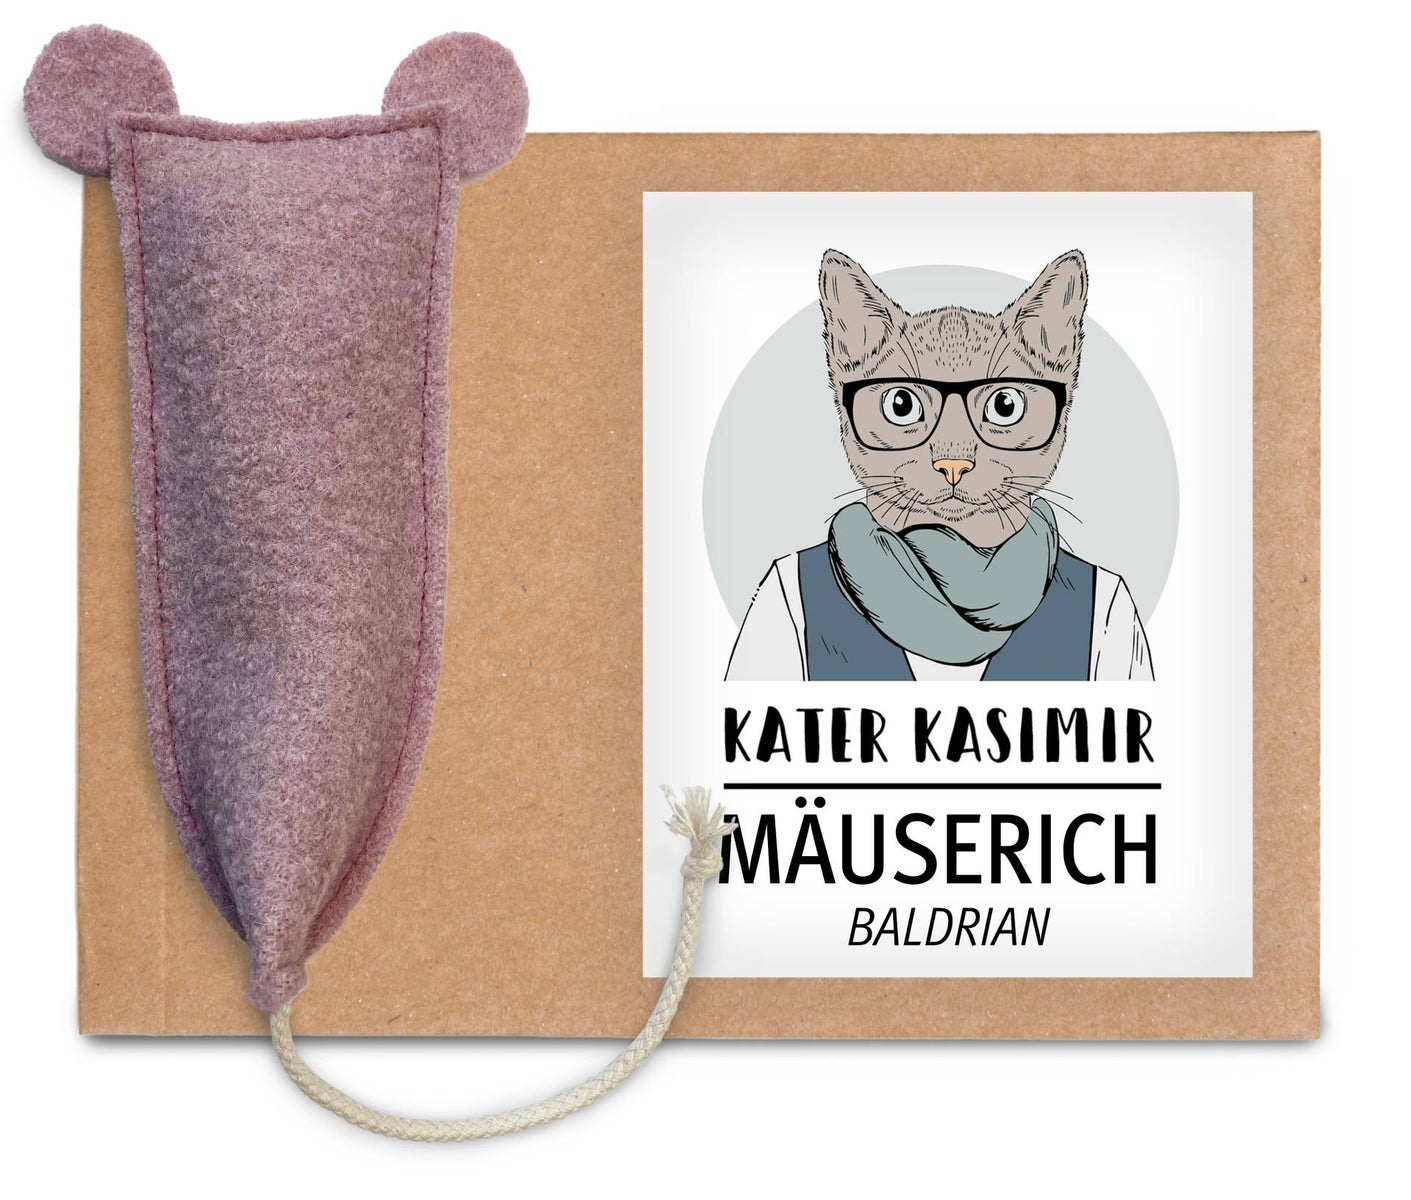 XL Spielmaus für Katzen aus reiner Schurwolle mit Baldrian-Füllung. Baldrian Spielkissen für Katzen. Handgenäht in Deutschland